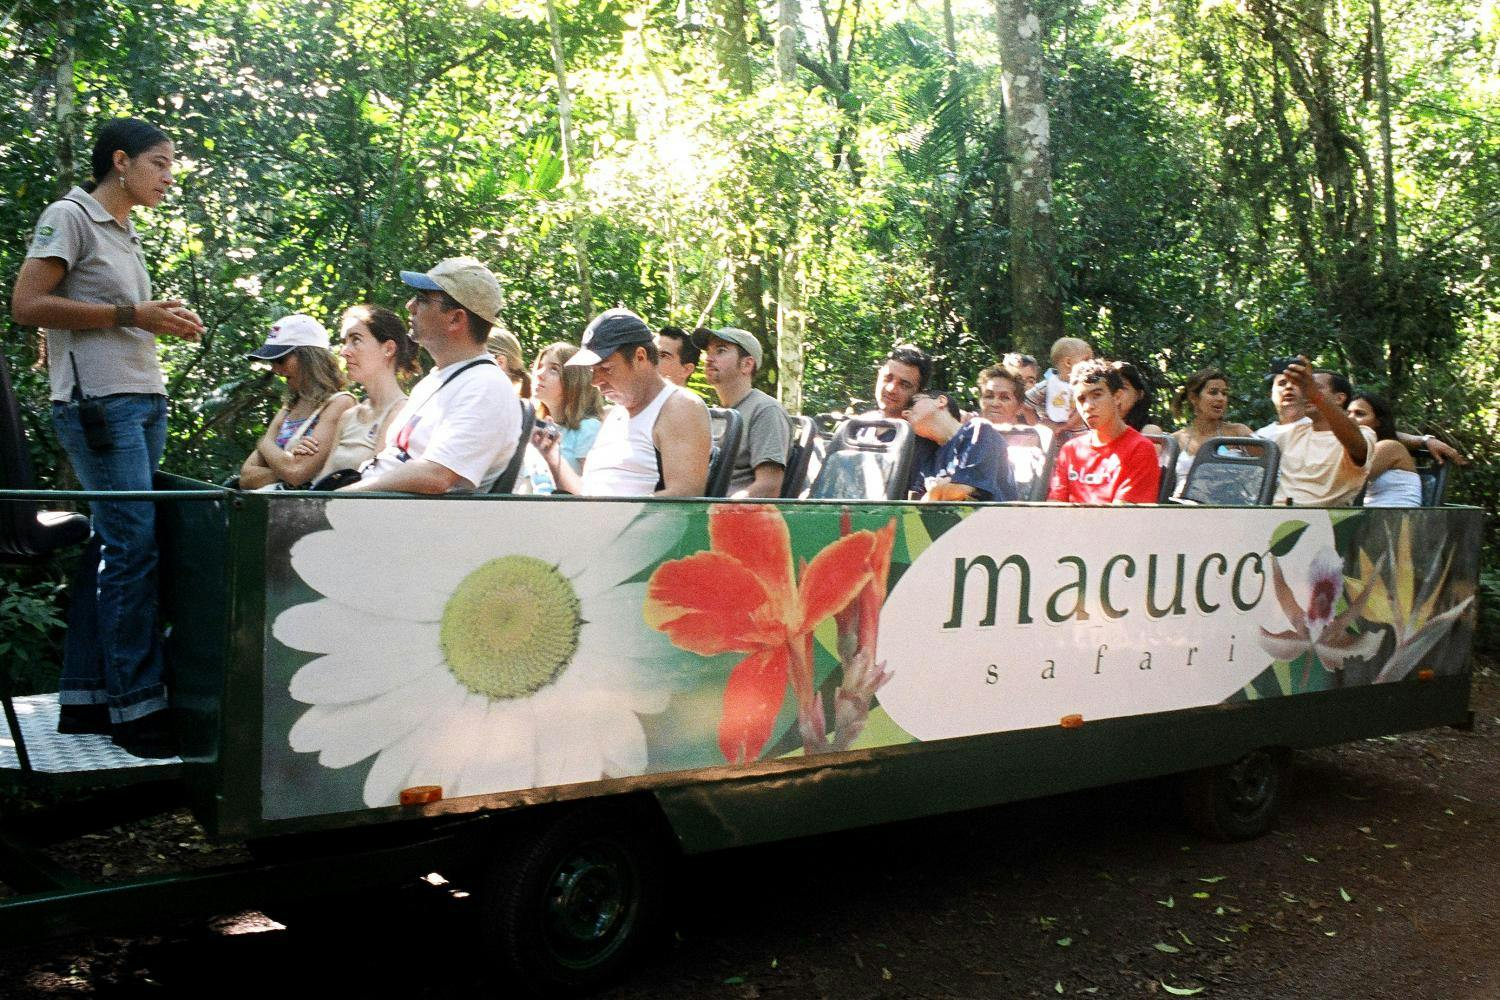 Macuco safari Iguassu 3.jpg